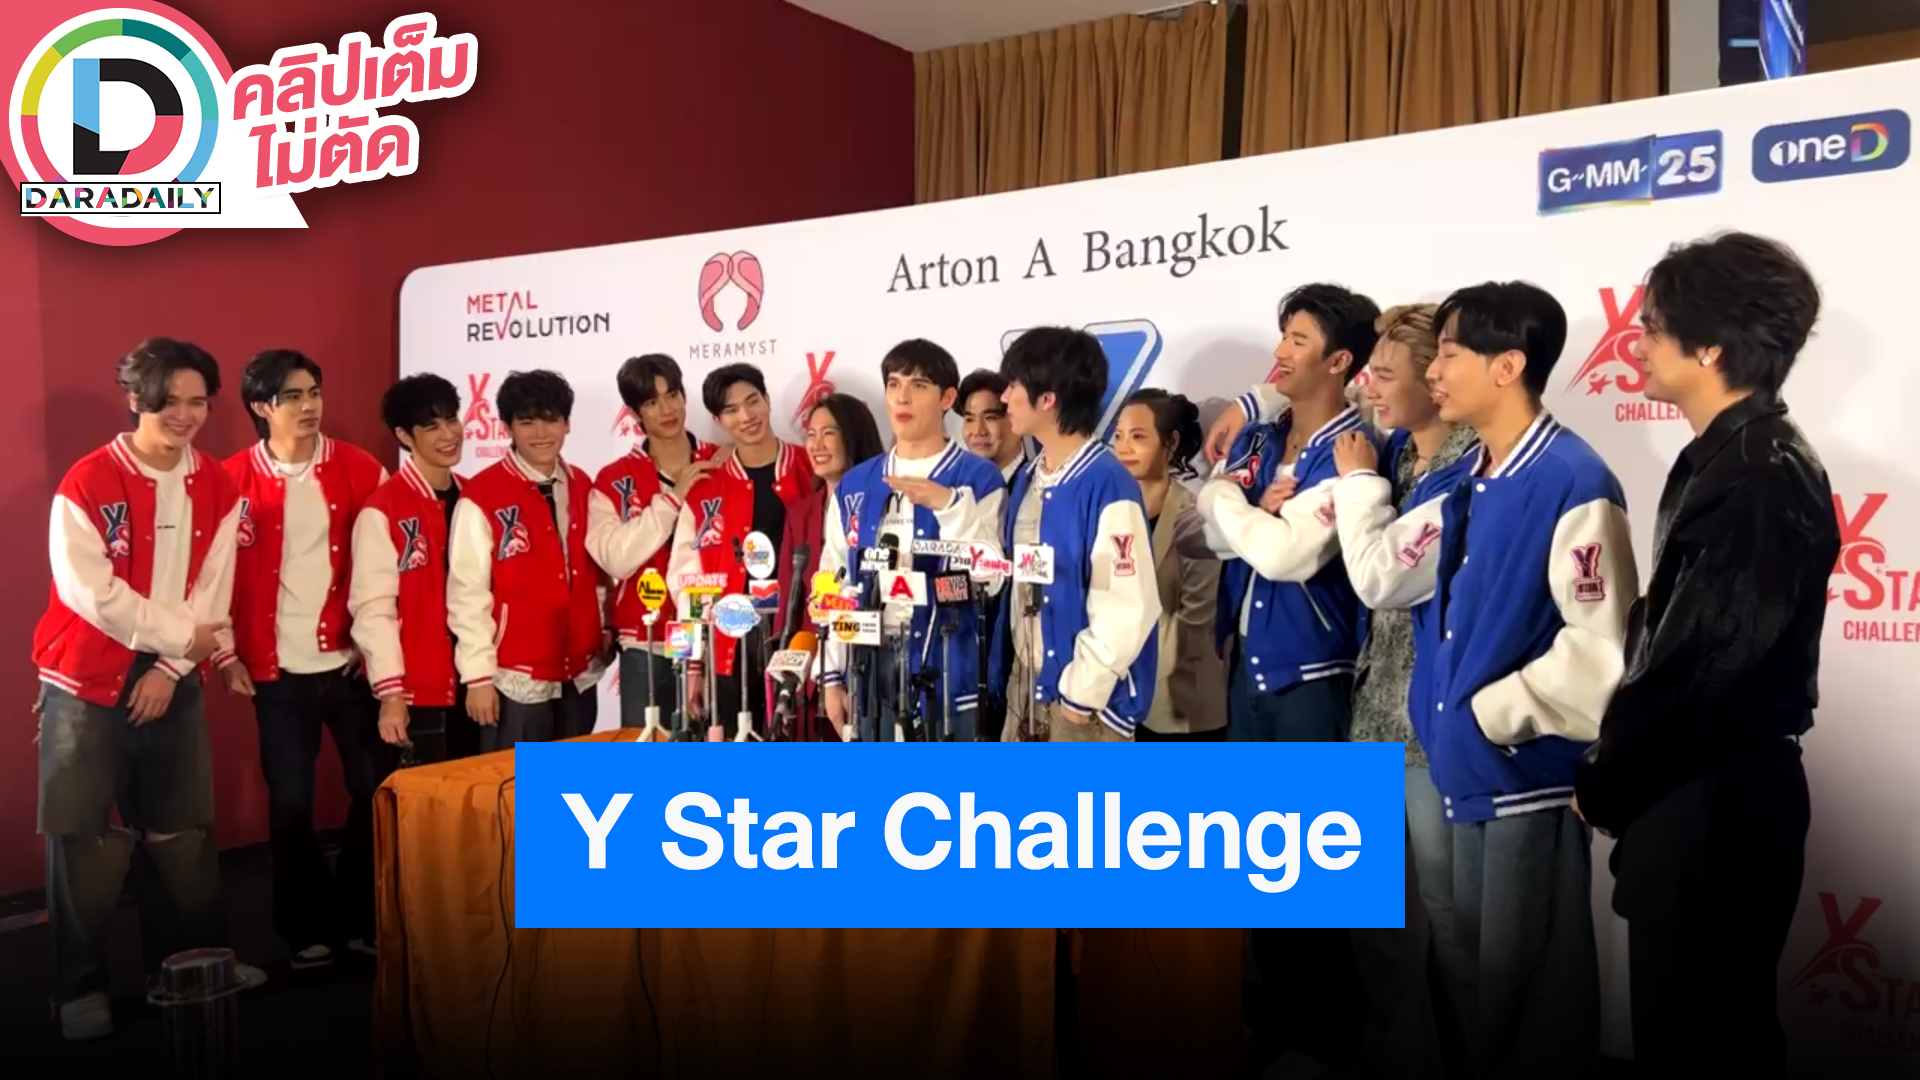 รายการ “Y Star Challenge” เปิดตัว 12 ผู้เข้าแข่งขัน การันตีความสนุกและความฟิน